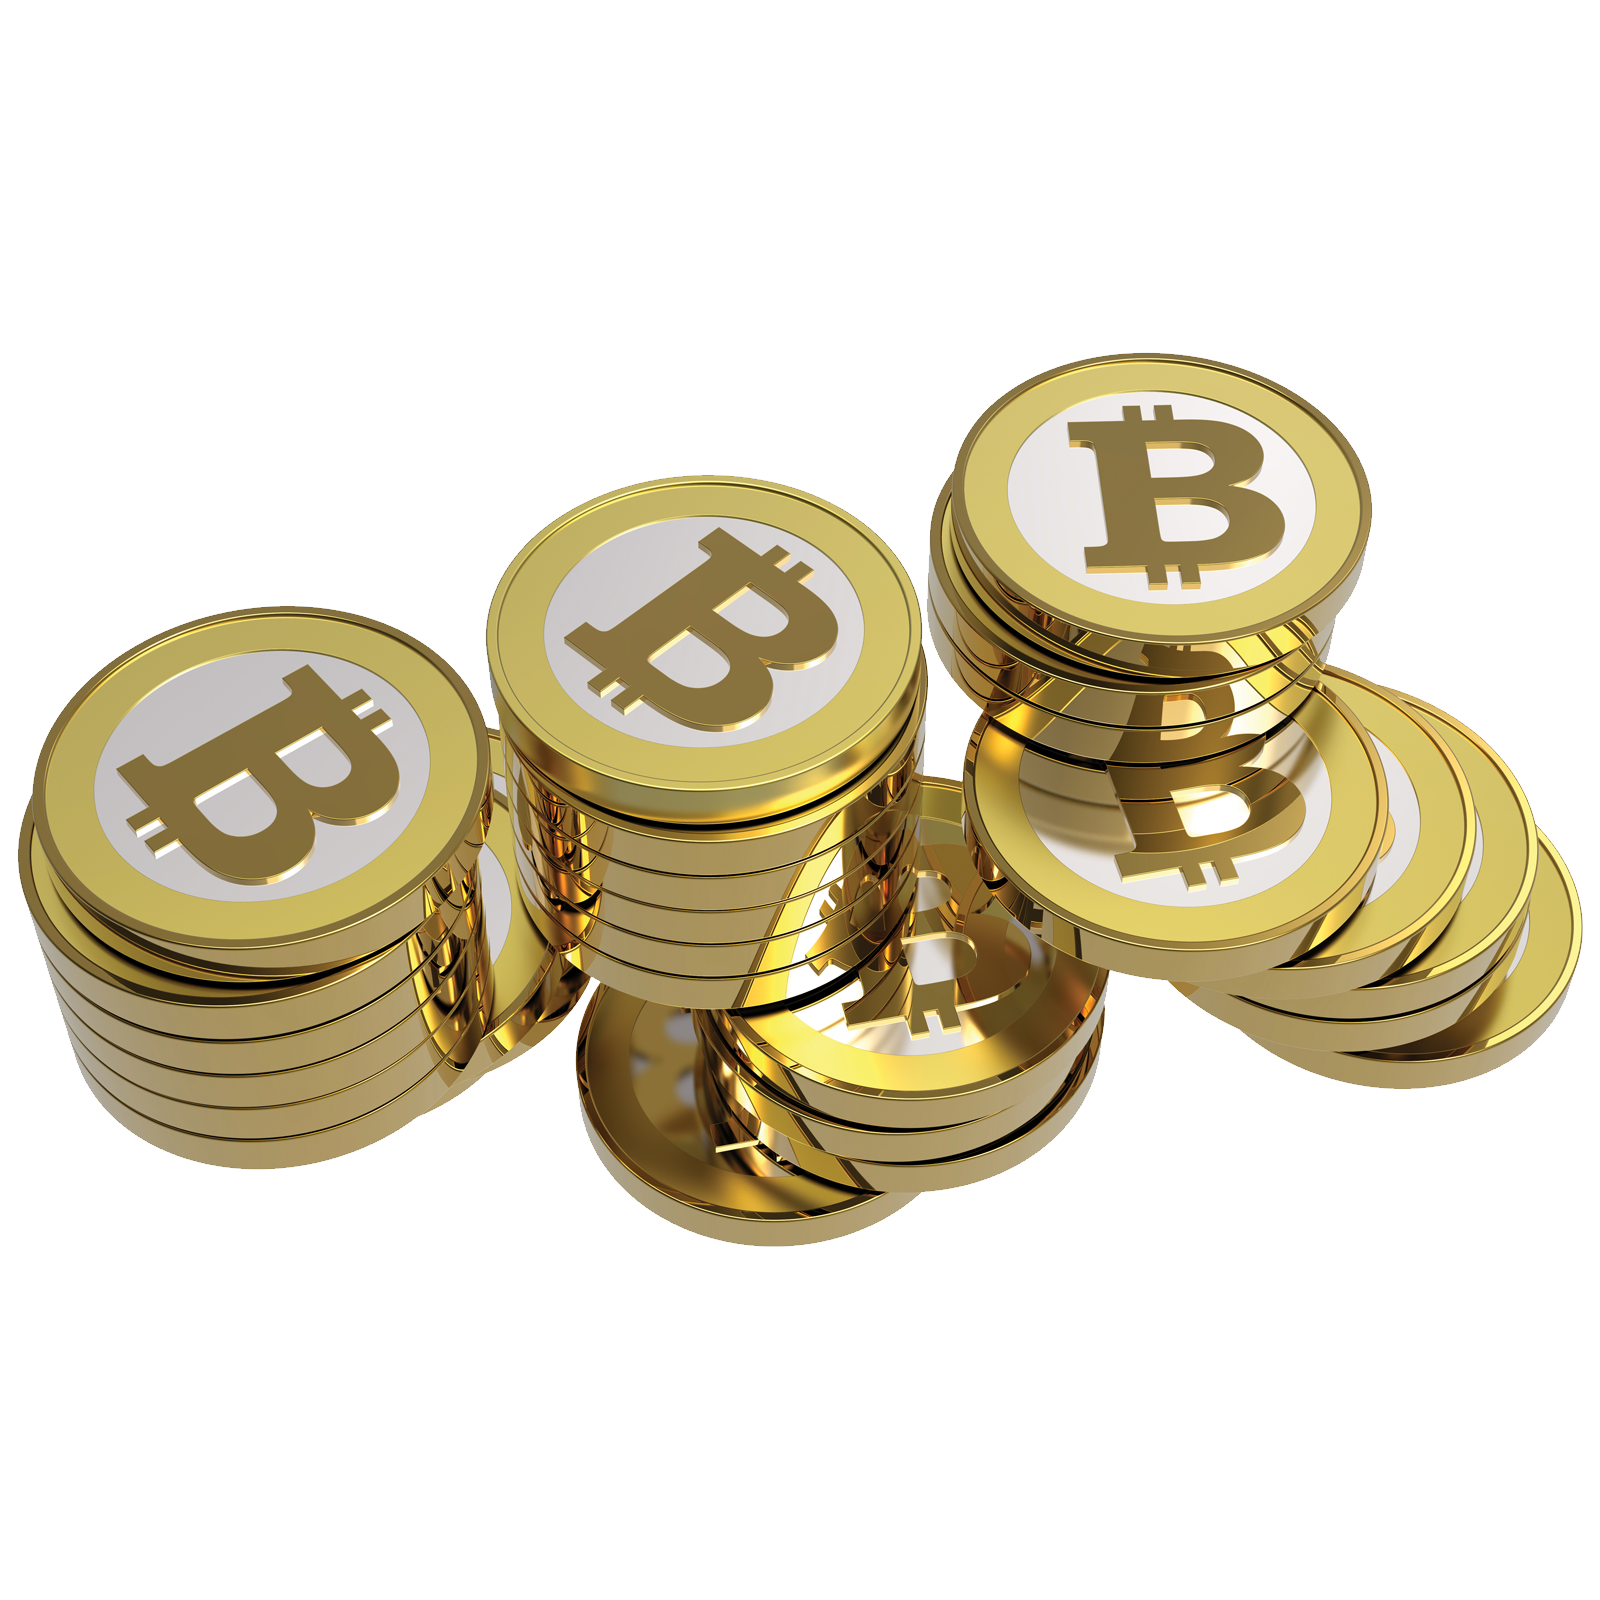 Bitcoin Transparent Image